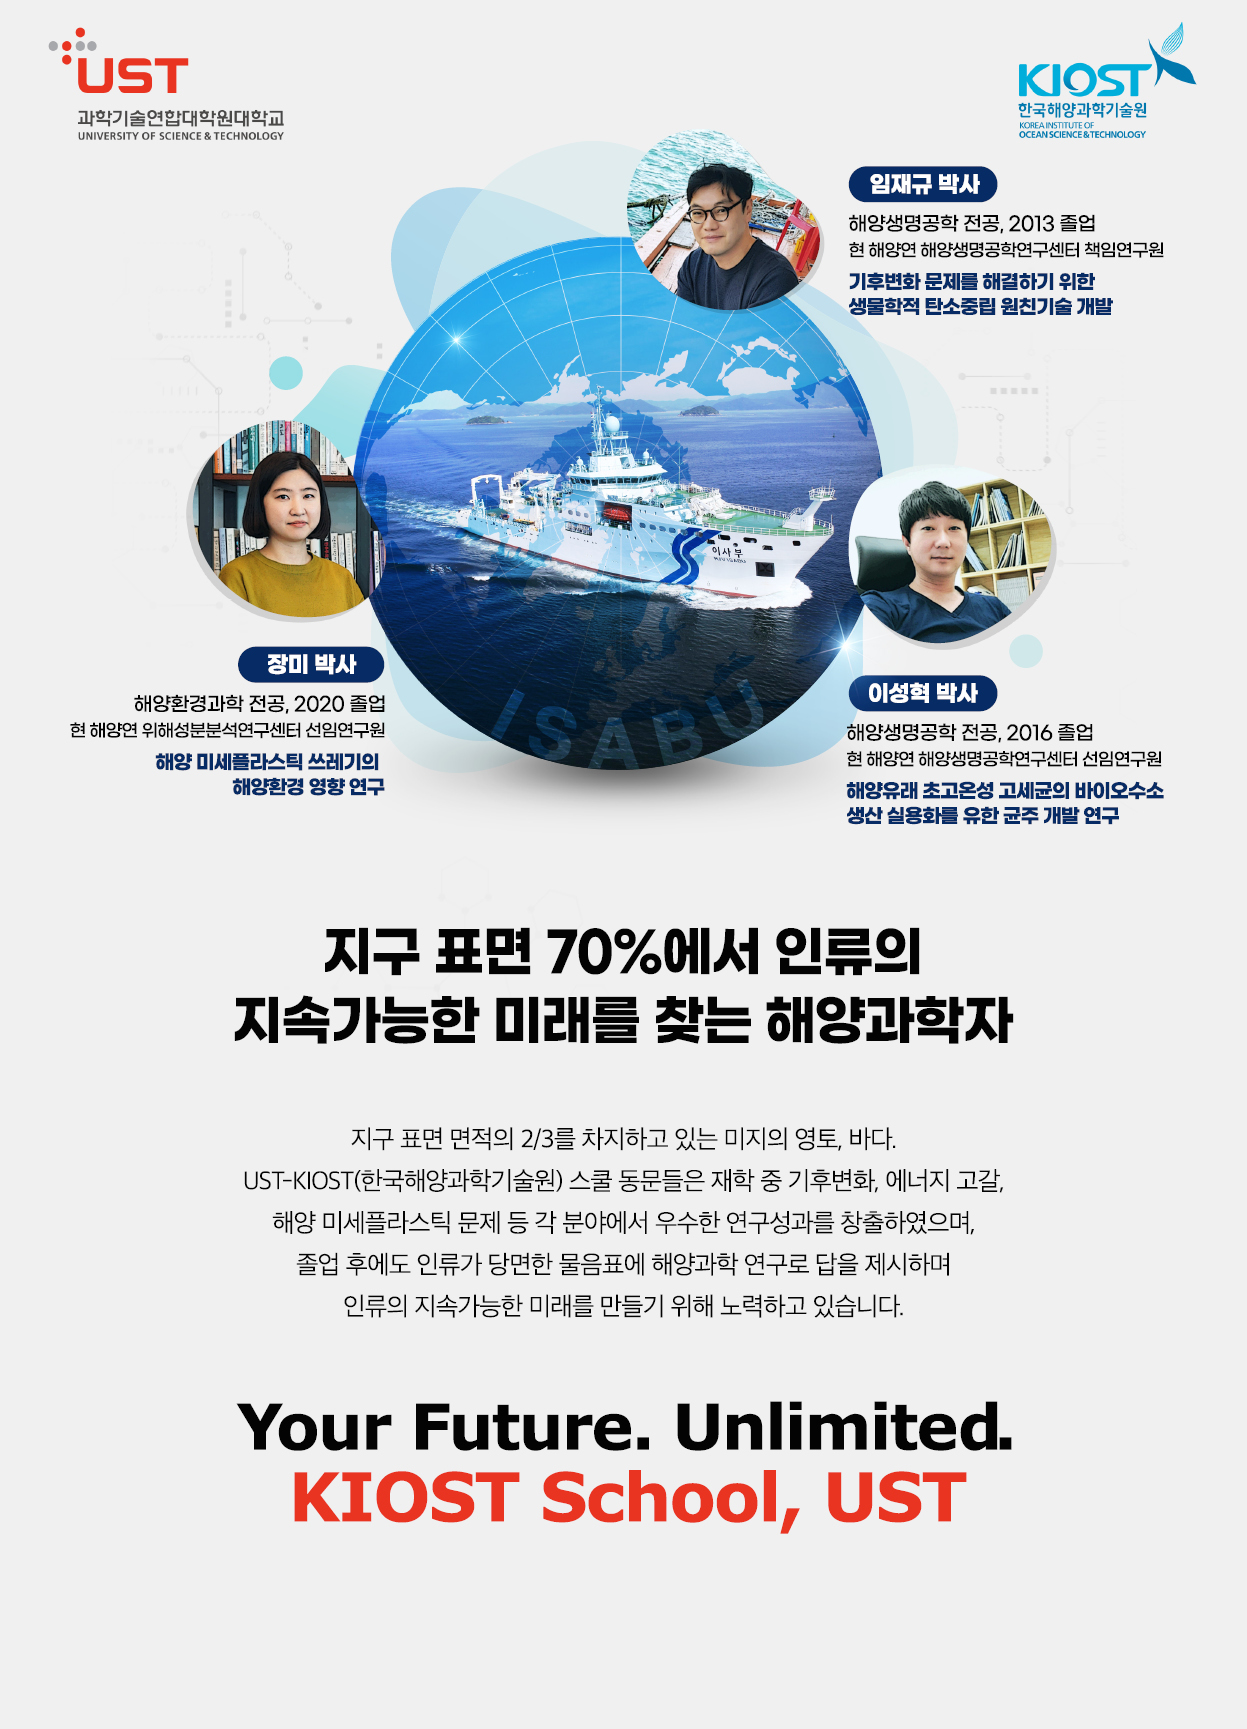 KIOST 한국해양과학기술원 캠퍼스 포스터로 자세한내용은 하단에 위치해있습니다.